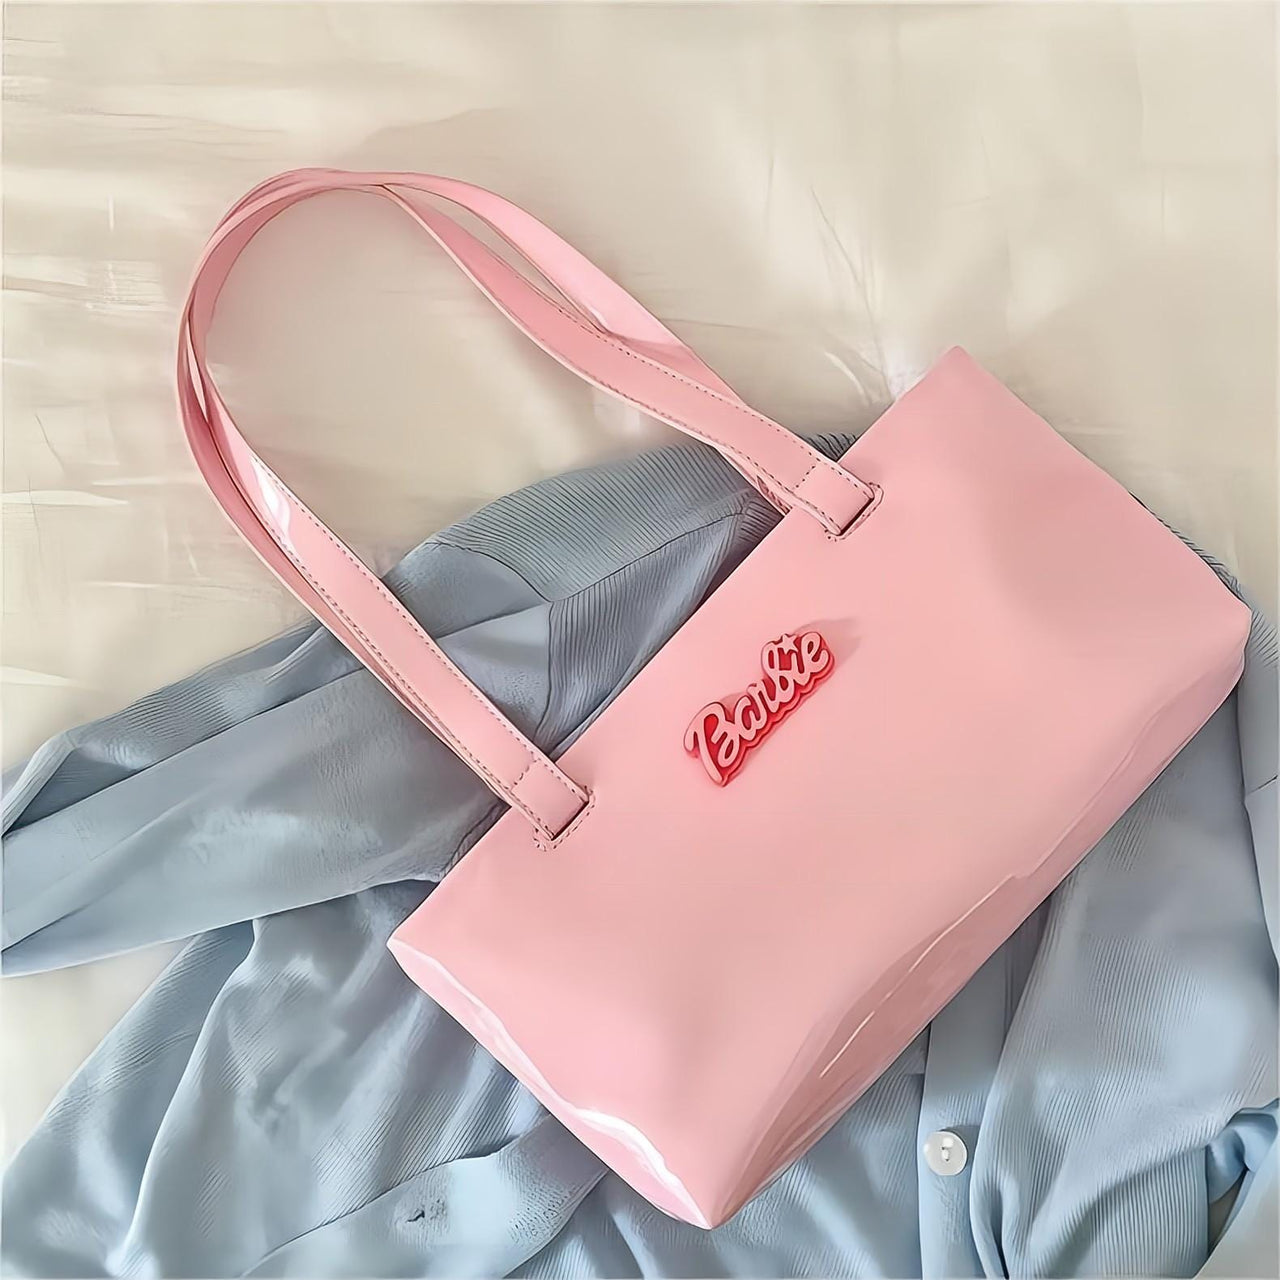 DR-Barbie Fashion Tote Bag